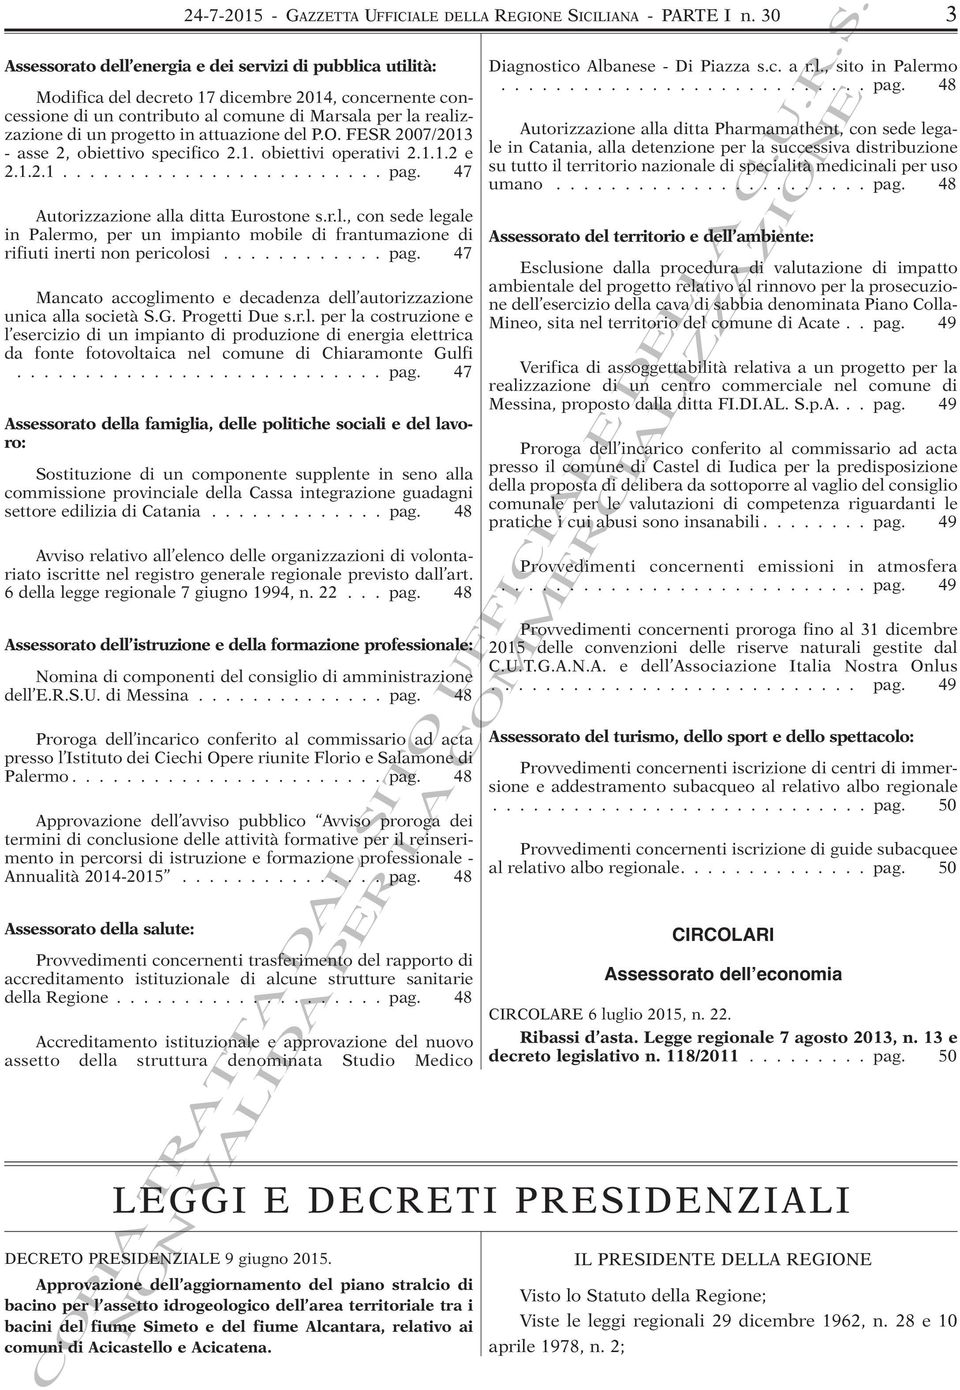 progetto in attuazione del P.O. FESR 2007/2013 - asse 2, obiettivo specifico 2.1. obiettivi operativi 2.1.1.2 e 2.1.2.1........................ pag. 47 Autorizzazione alla ditta Eurostone s.r.l., con sede legale in Palermo, per un impianto mobile di frantumazione di rifiuti inerti non pericolosi.